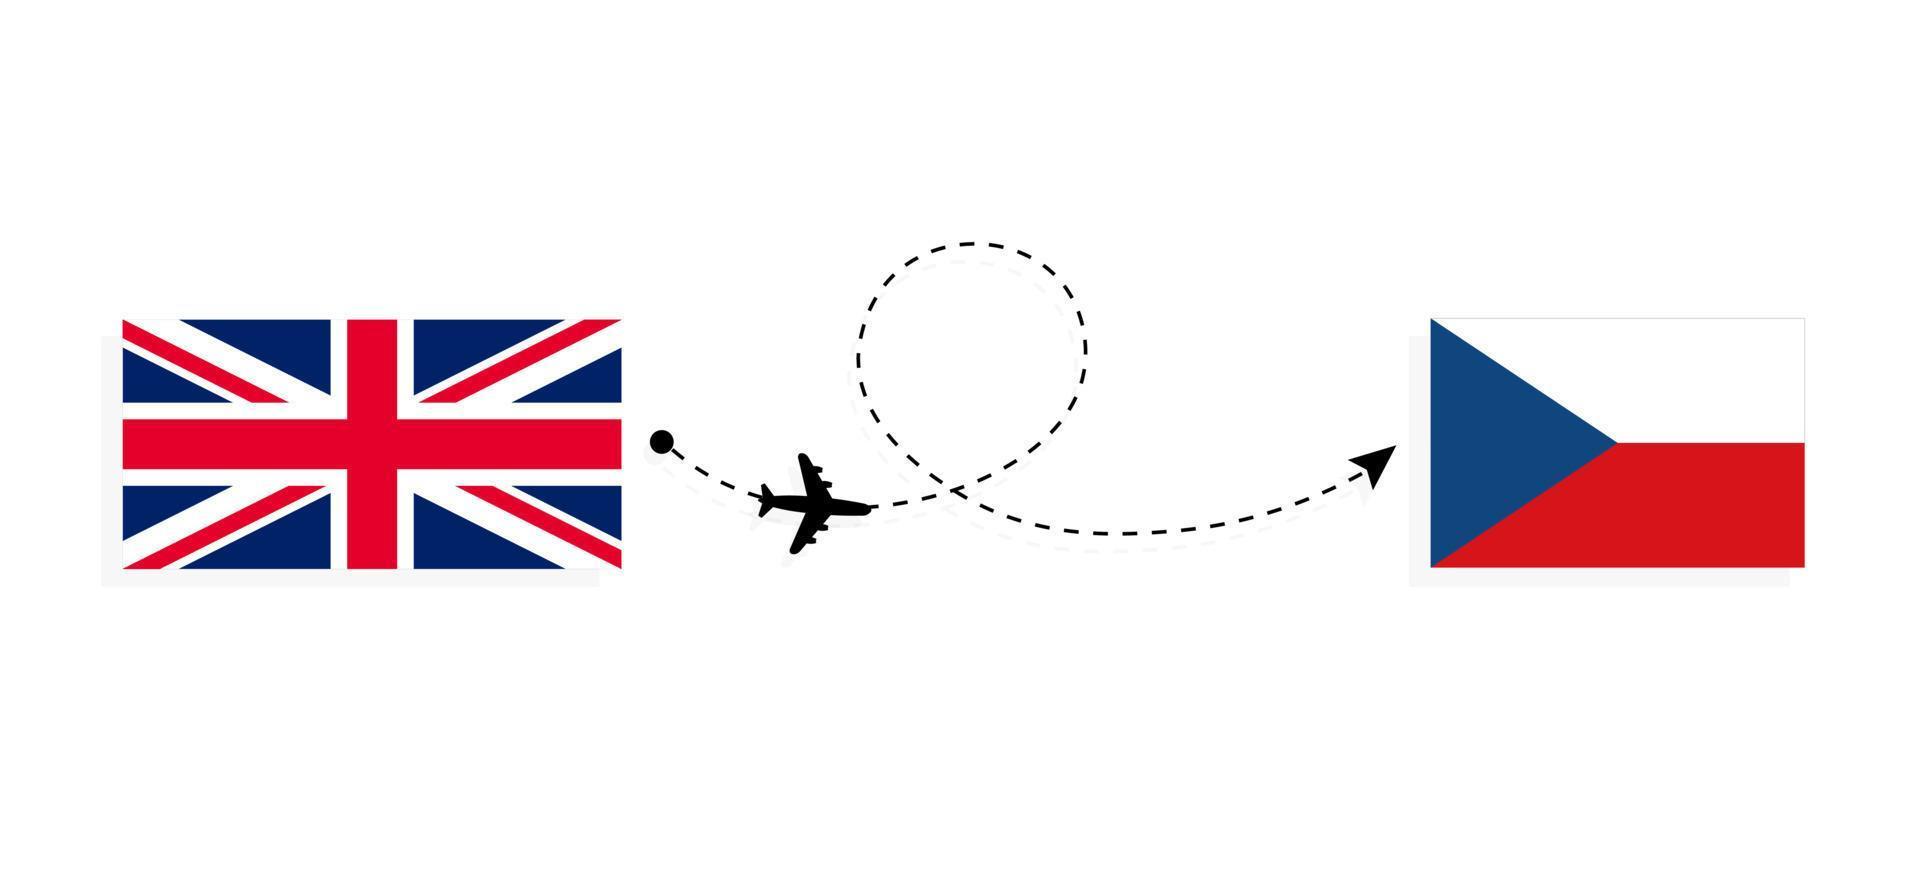 flyg och resor från Storbritannien till Tjeckien med passagerarflygplan vektor